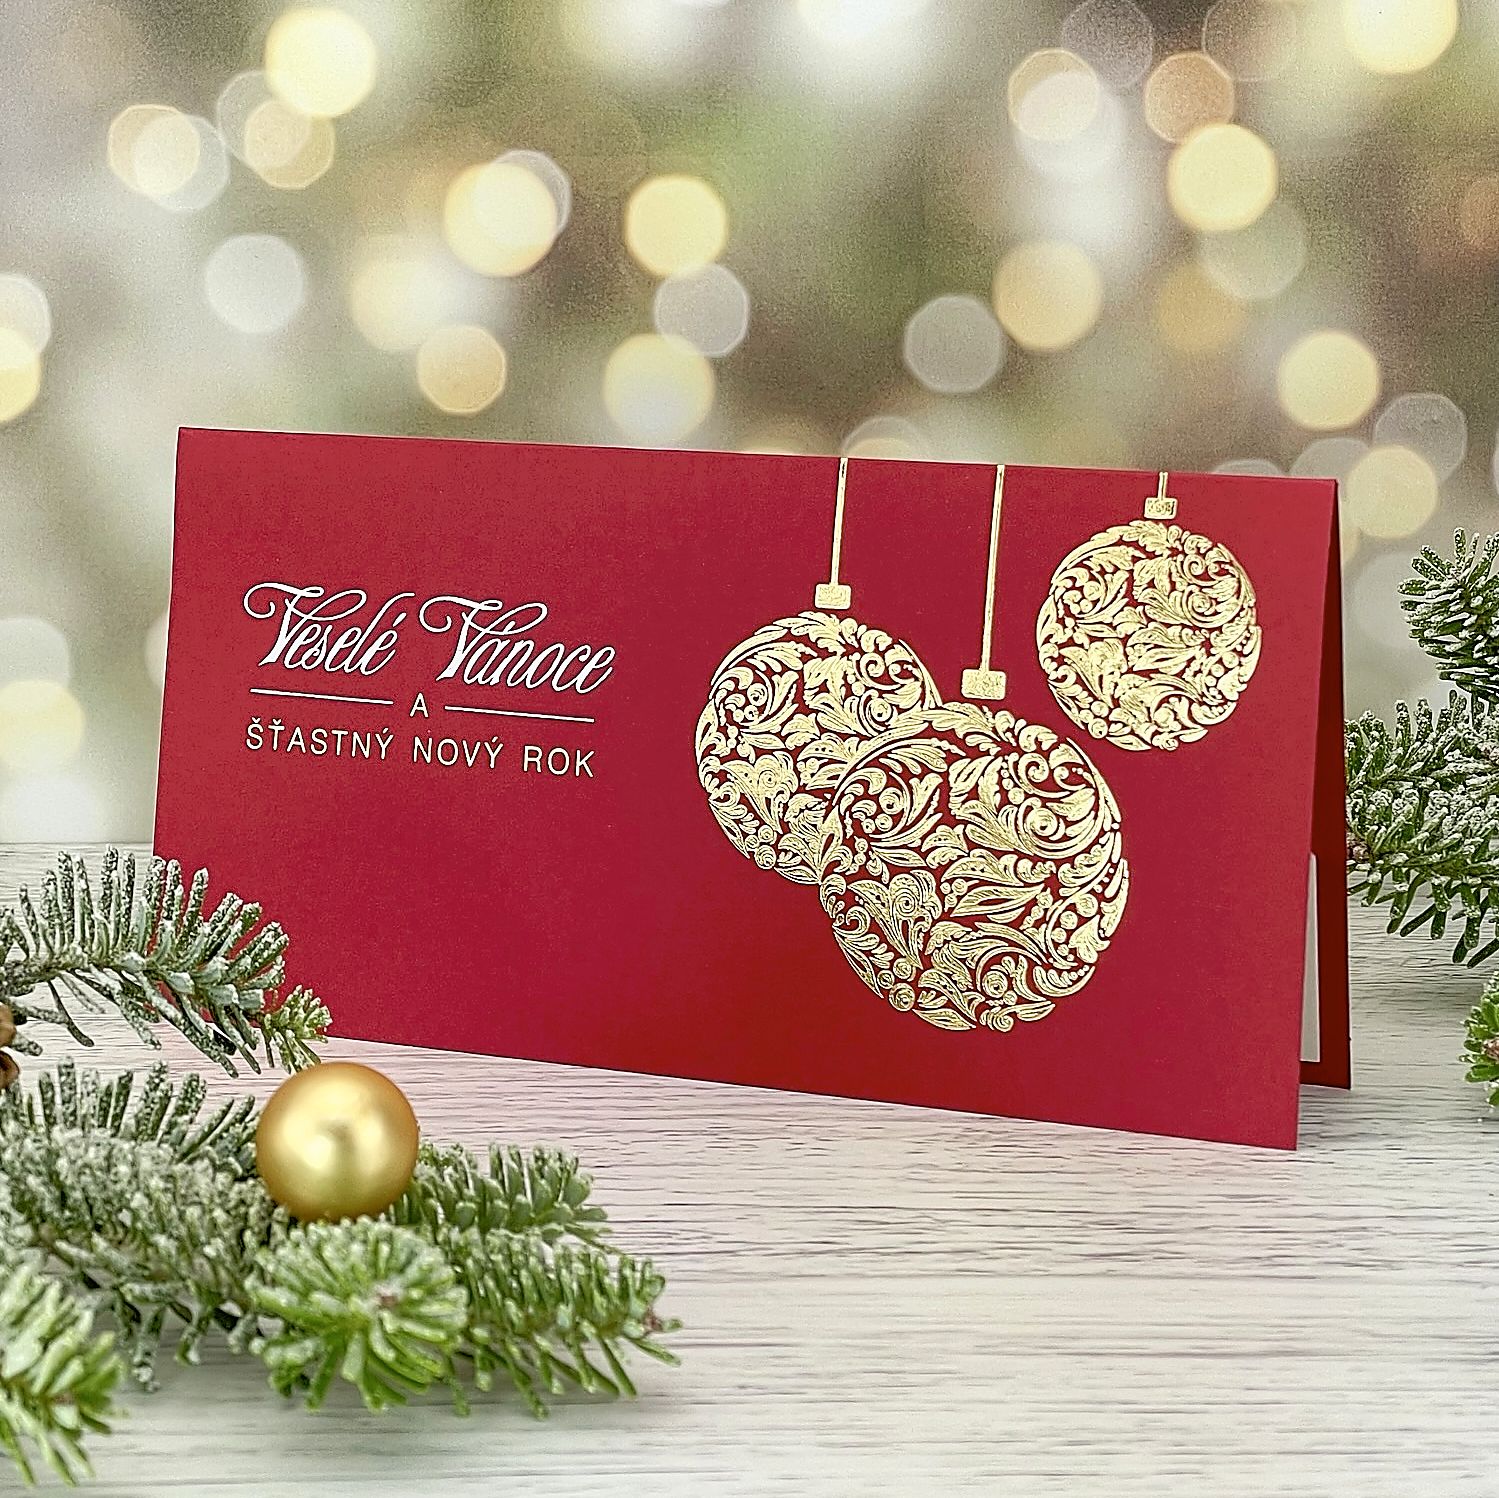 Novoroční–vánoční přání s reliéfní ražbou trojice zlatých baněk; otevírací, formát 200 × 100 mm.